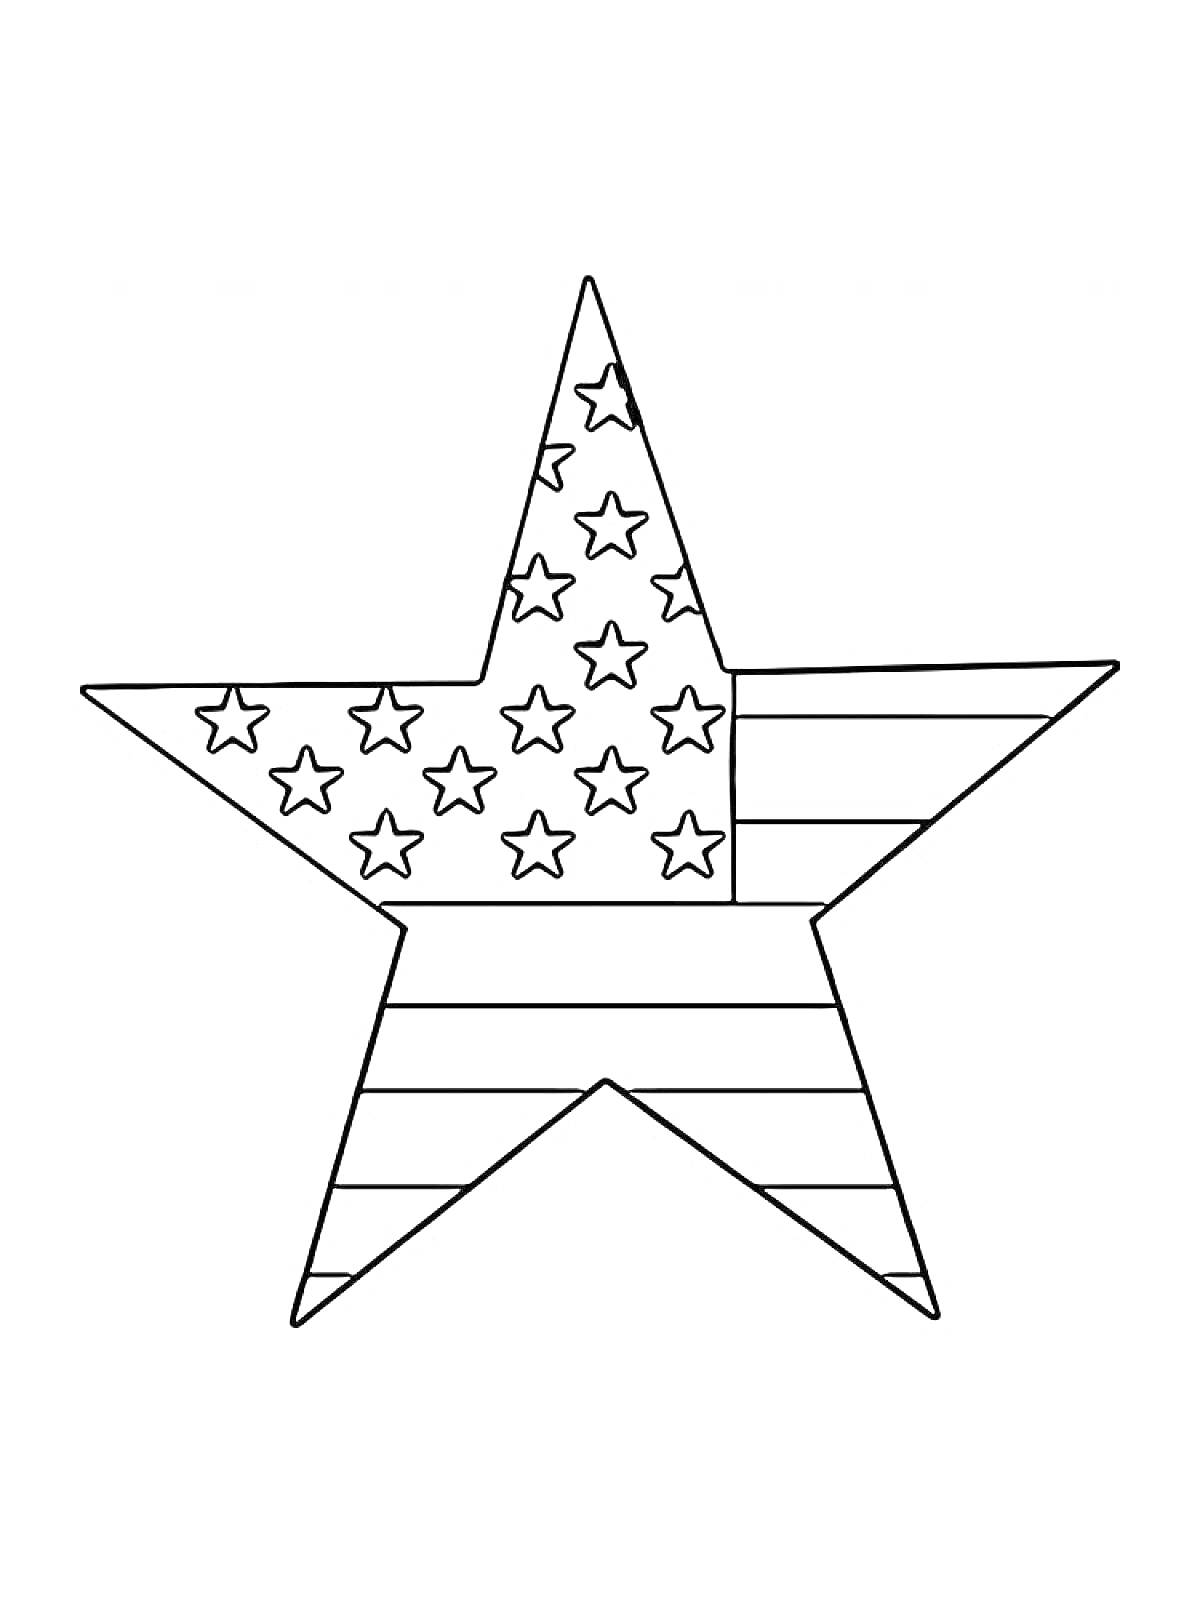 Звезда с полосами и маленькими звездами внутри